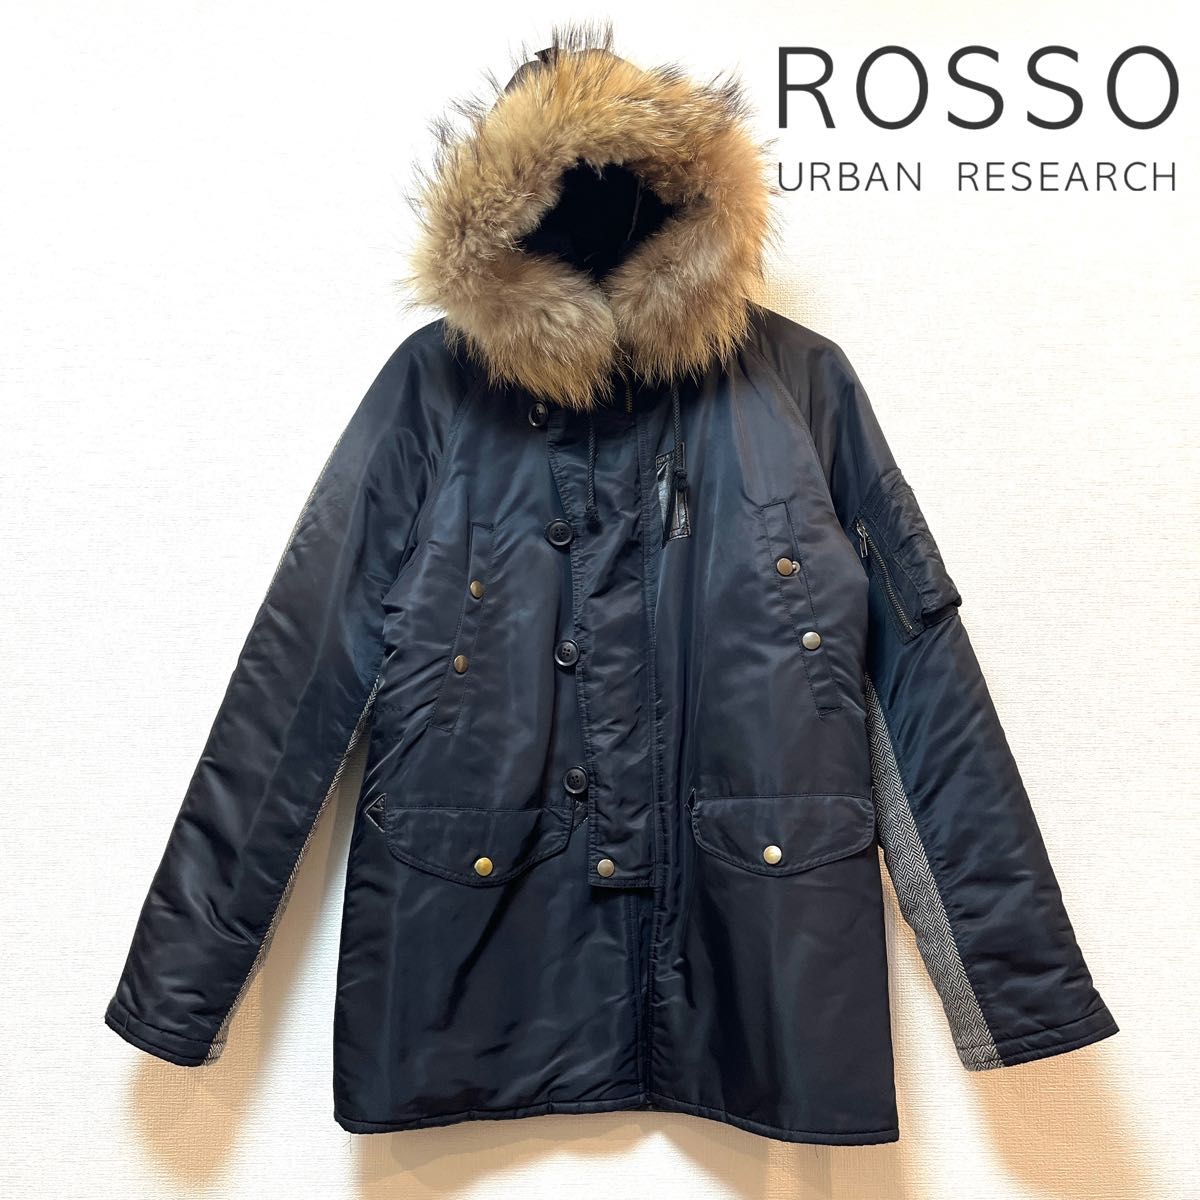 URBAN RESEARCH ROSSO(アーバンリサーチロッソ) ファーモッズコート フライトジャケット ツイード×ナイロン 黒